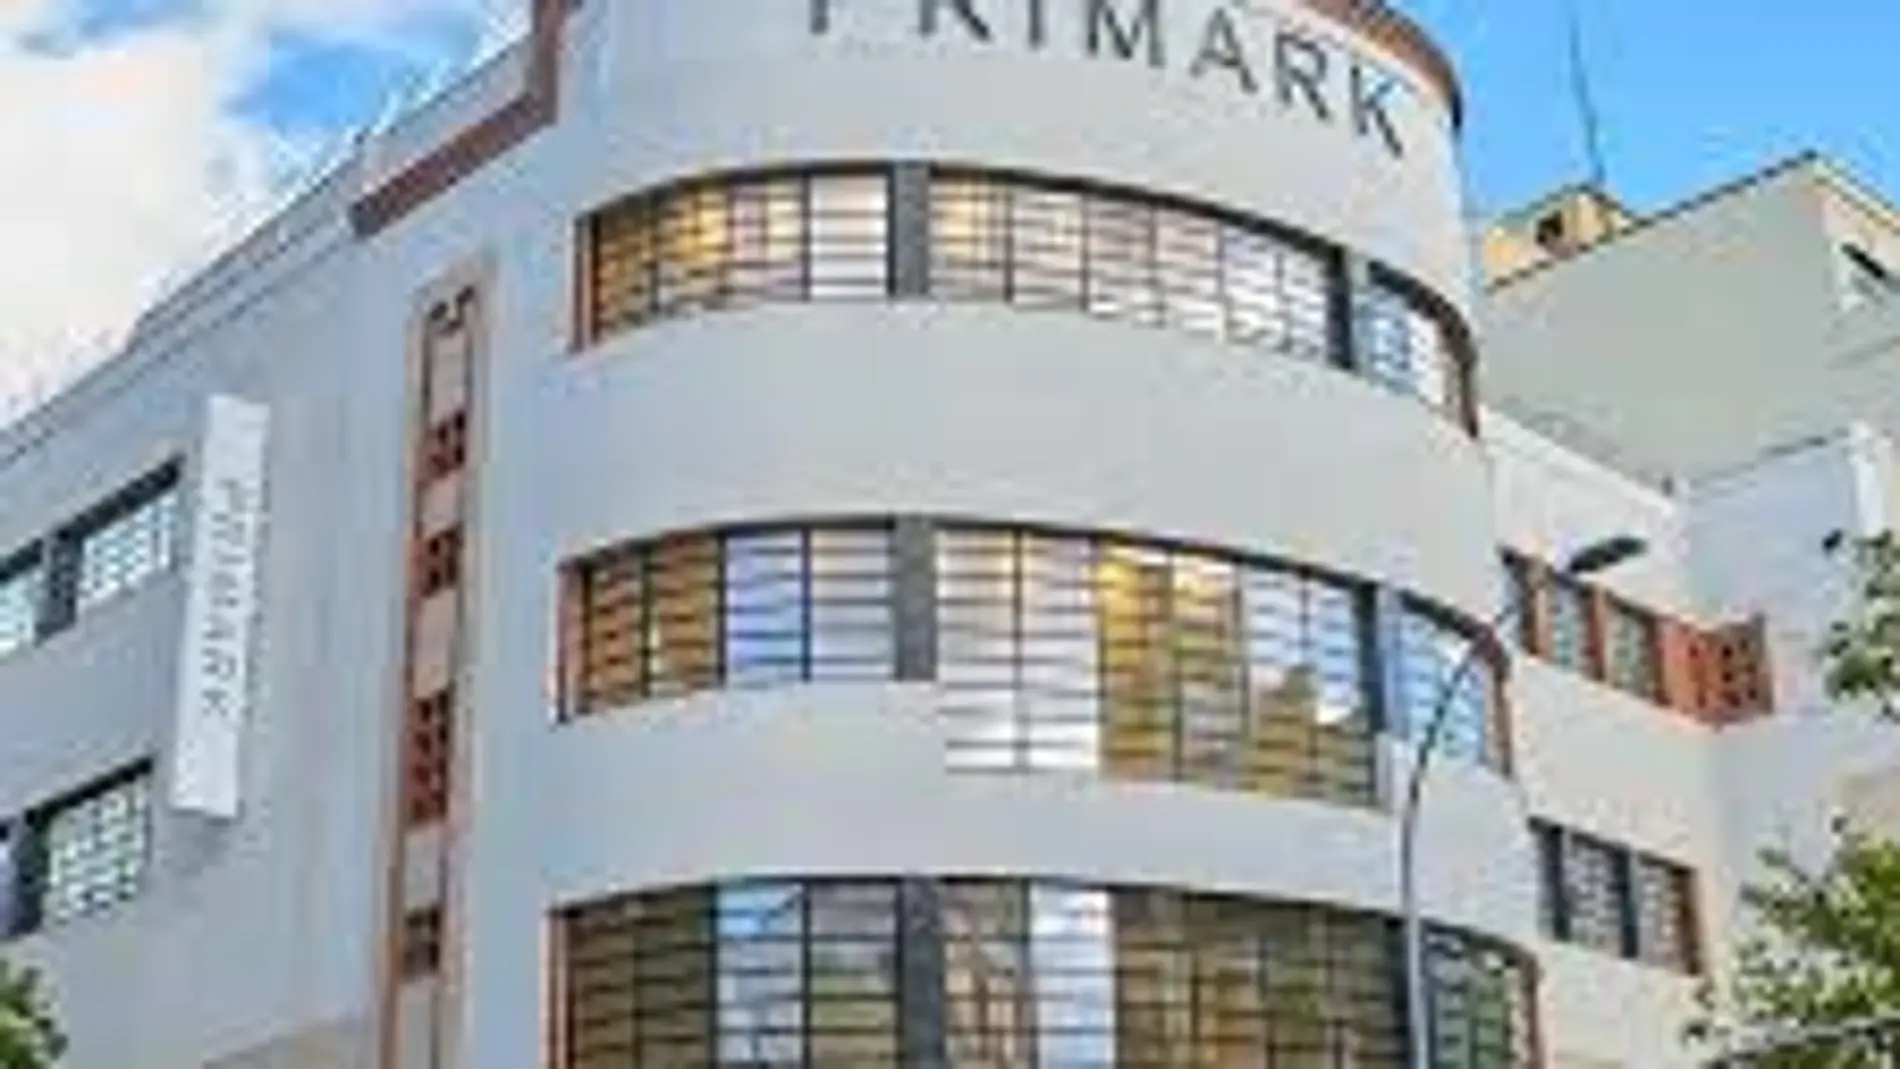 Primark anuncia la fecha de apertura de su tienda en el barrio de Salamanca en Madrid